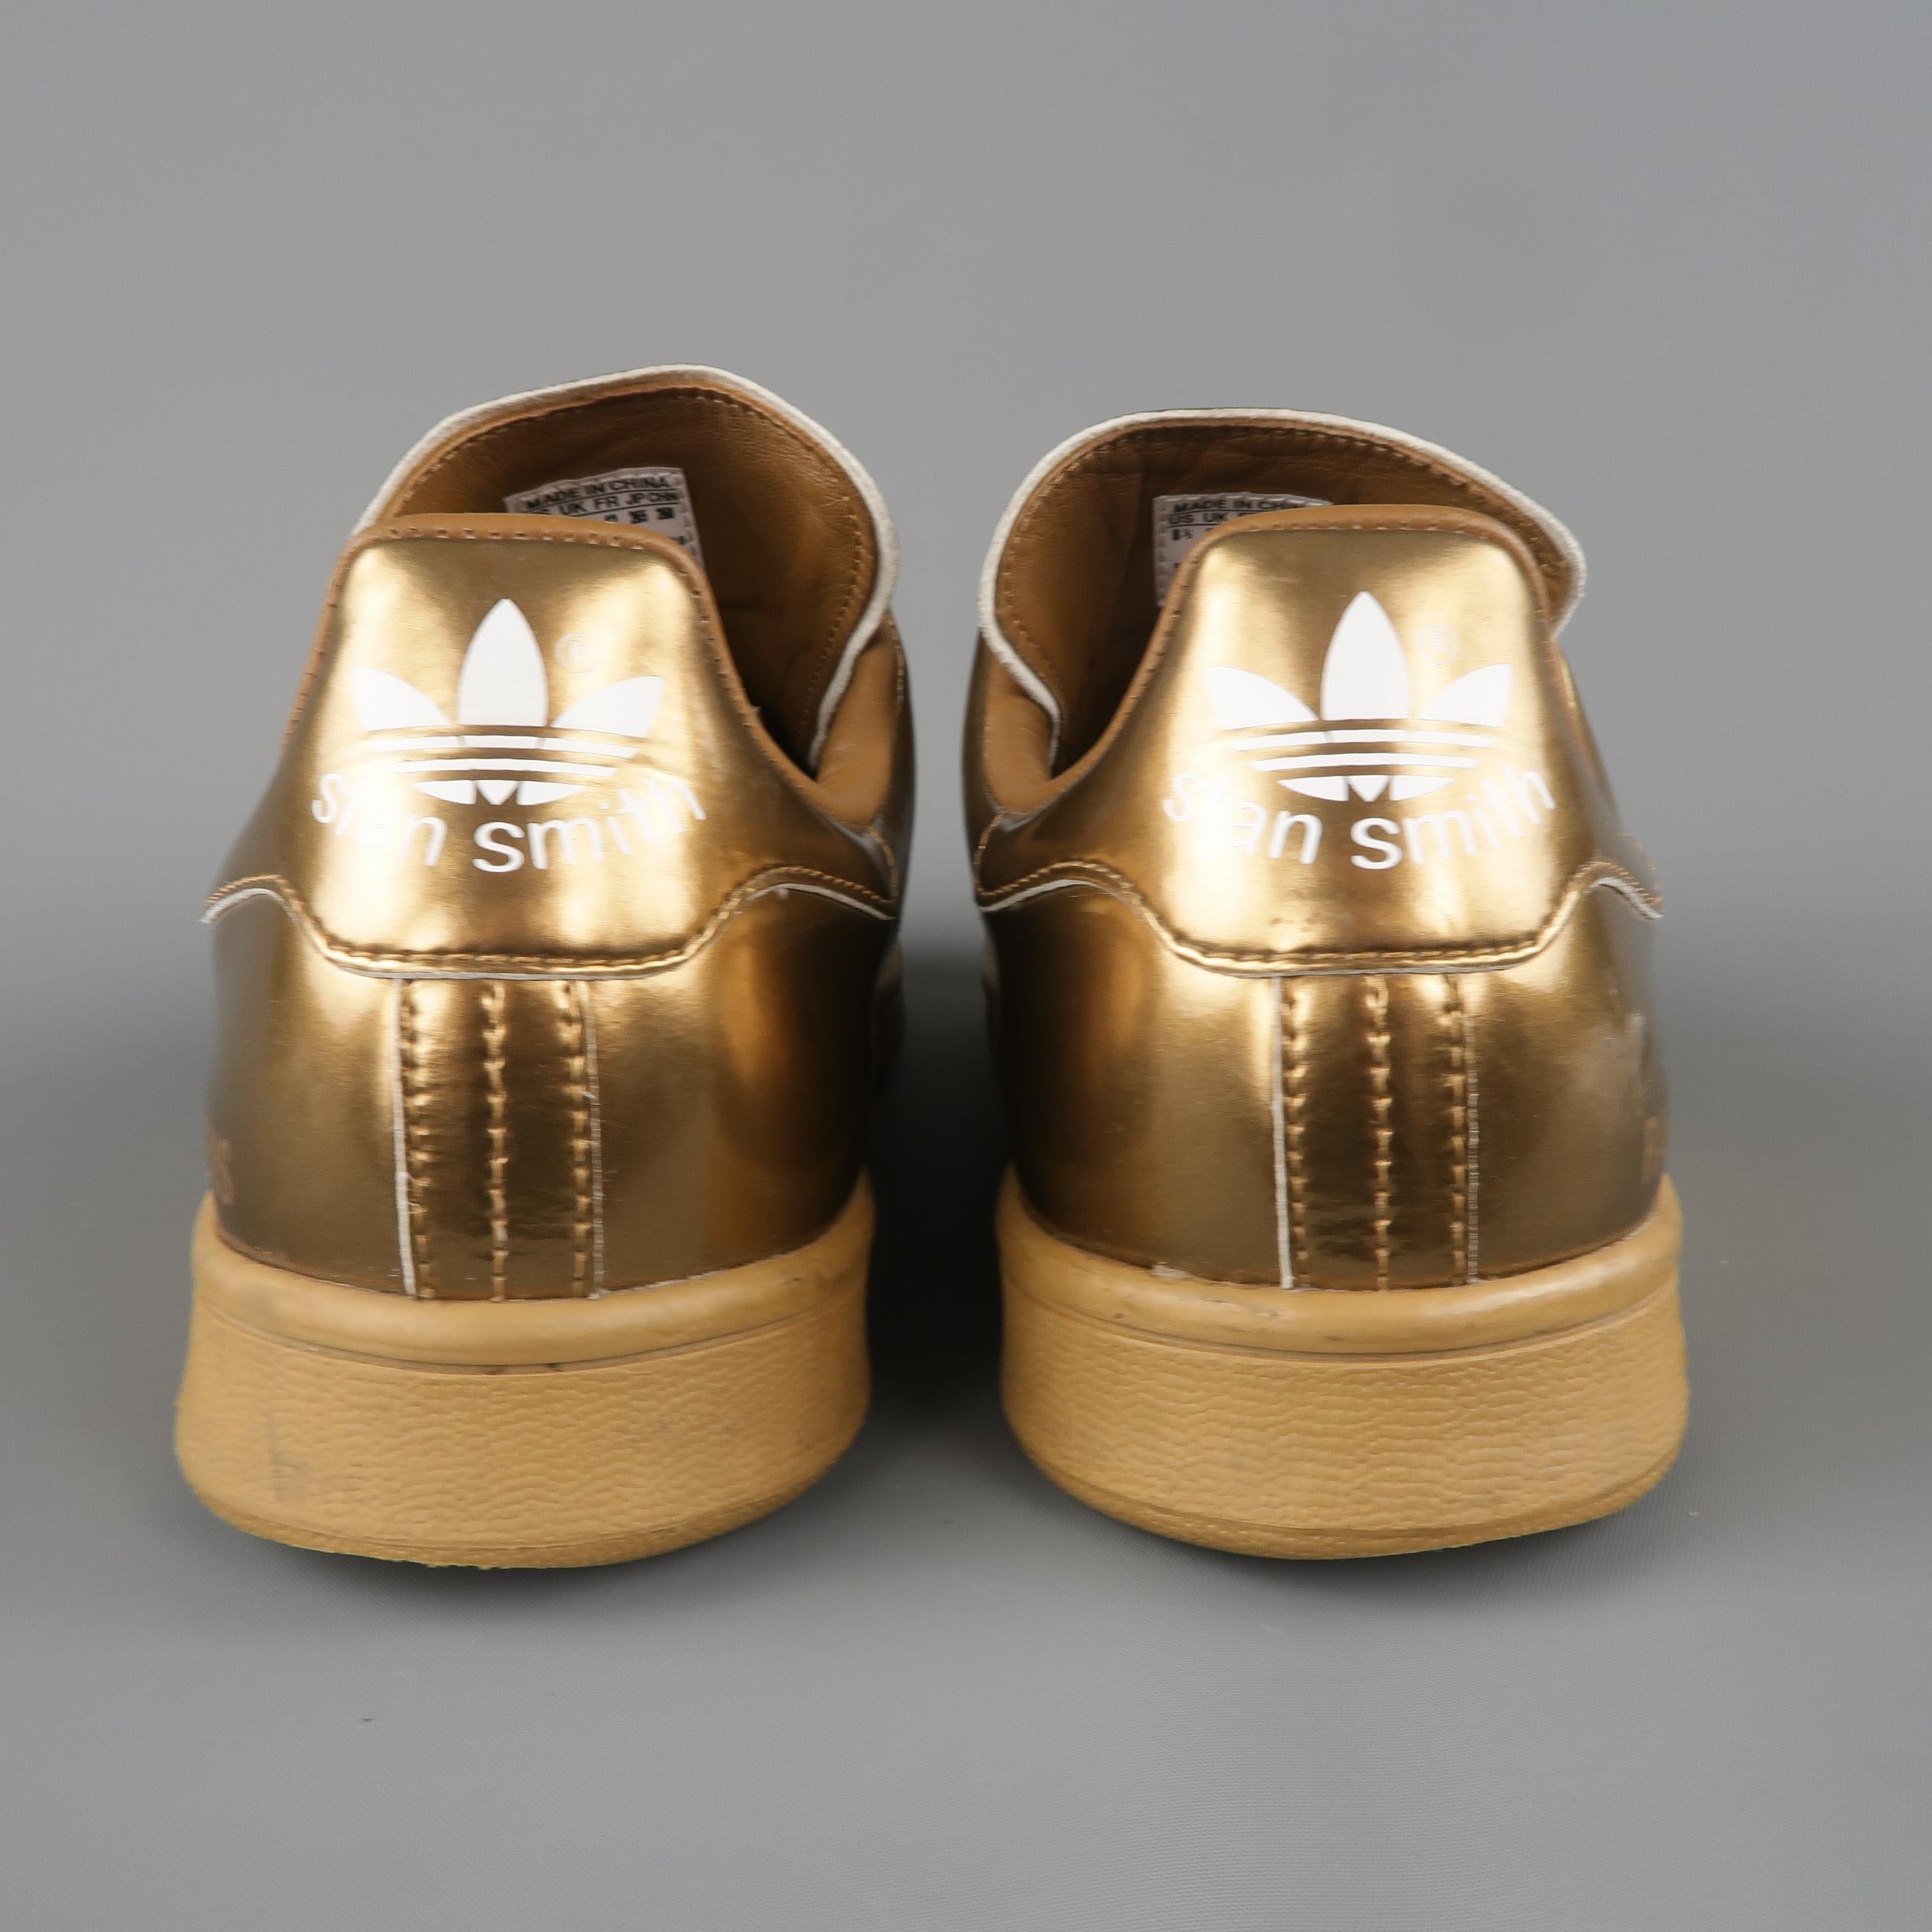 Raf Simons Adidas Copper Metallic Leather Stan Smith Sneakers 2